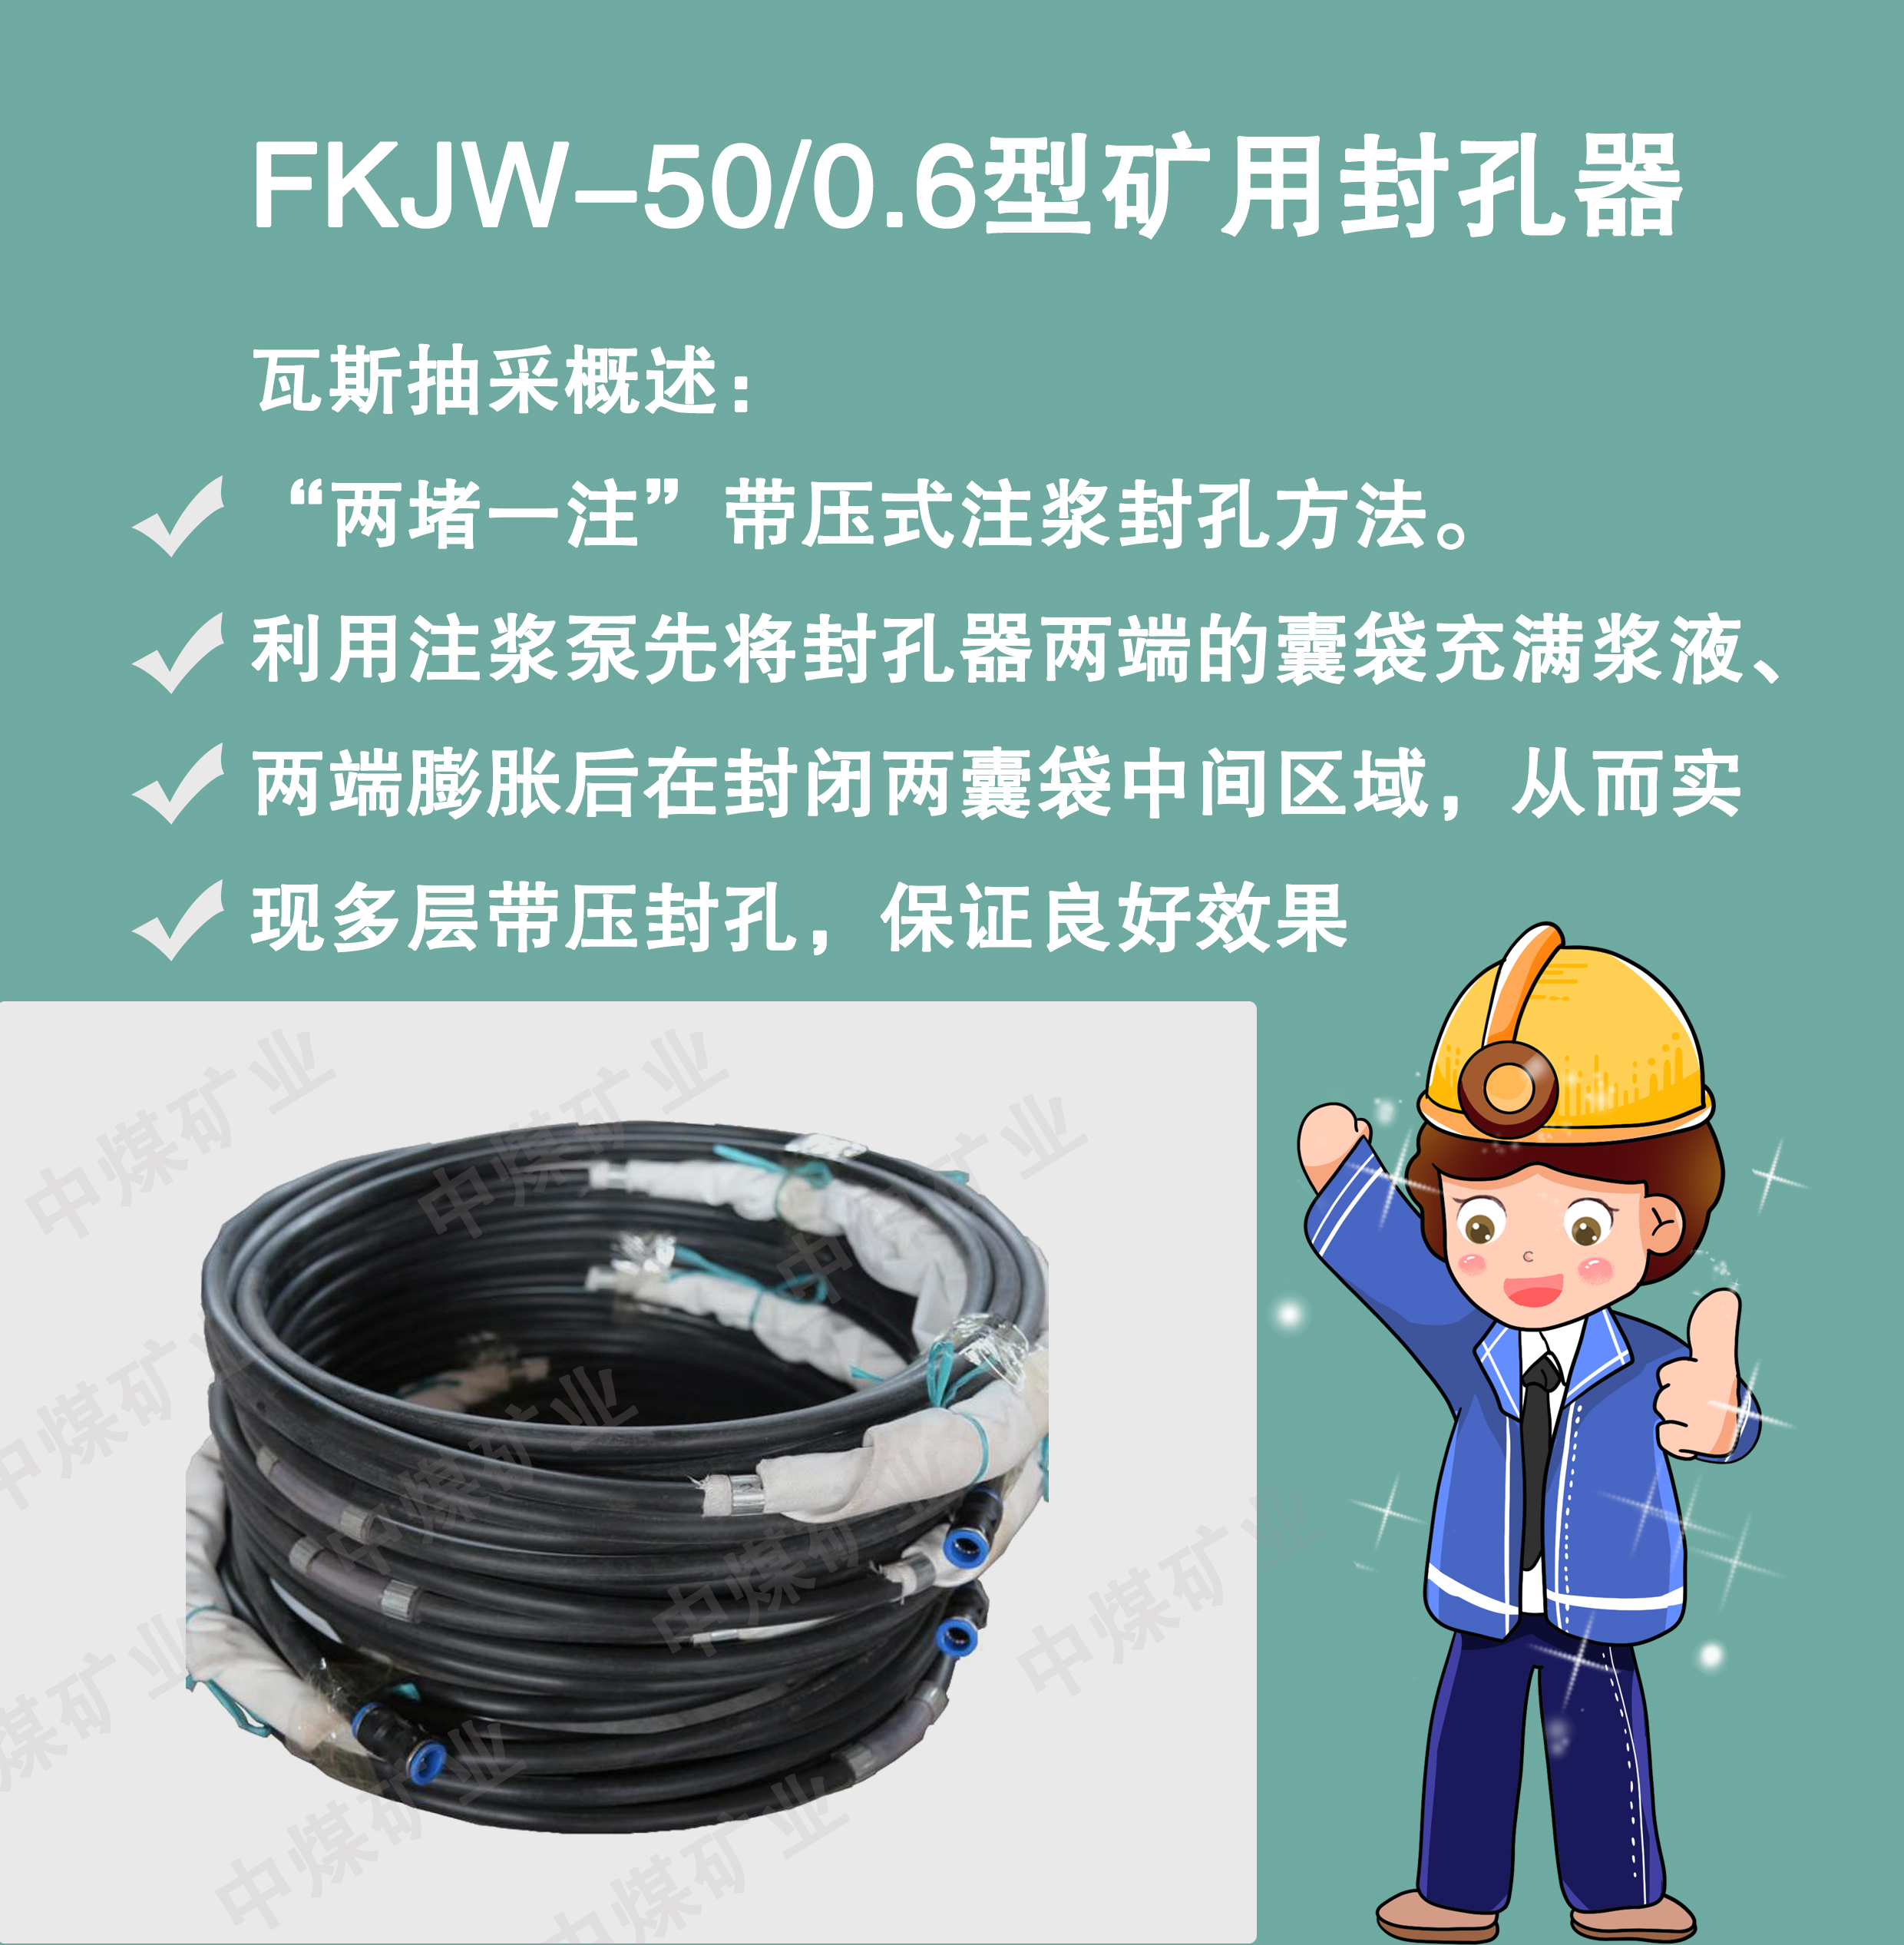 安阳市FKJW-50/0.6型矿用封孔厂家FKJW-50/0.6型矿用封孔 中煤矿业